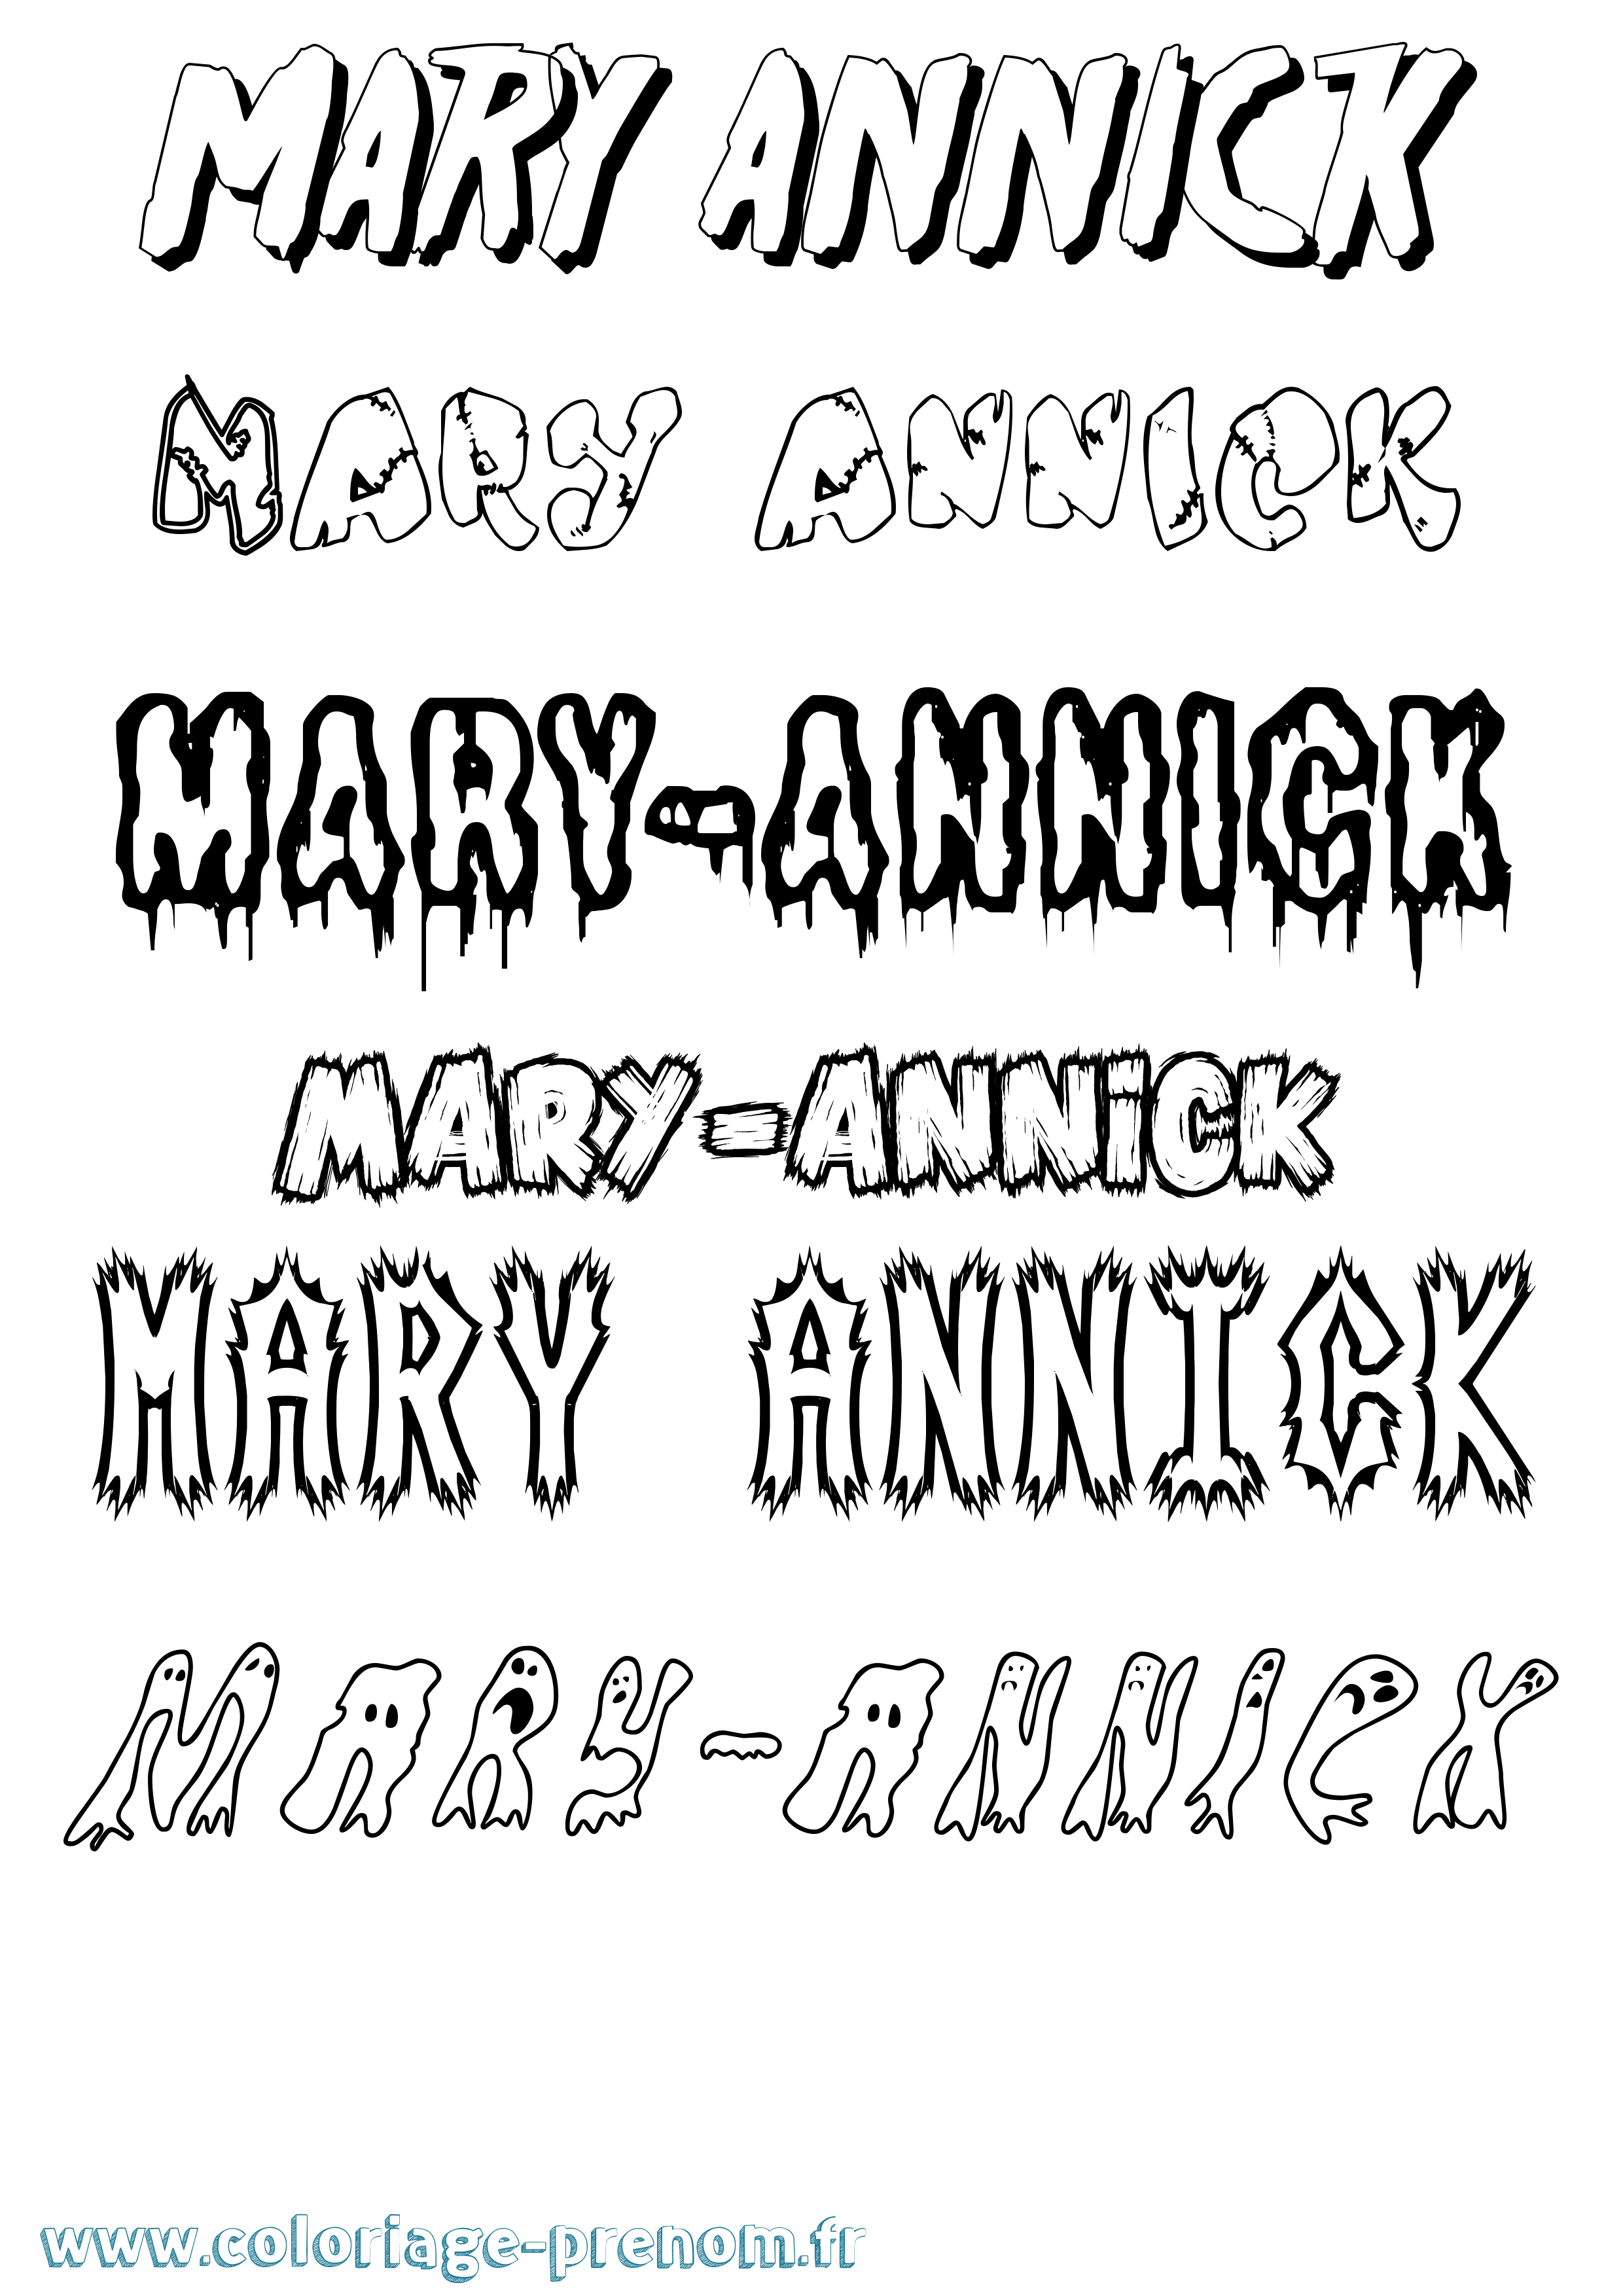 Coloriage prénom Mary-Annick Frisson